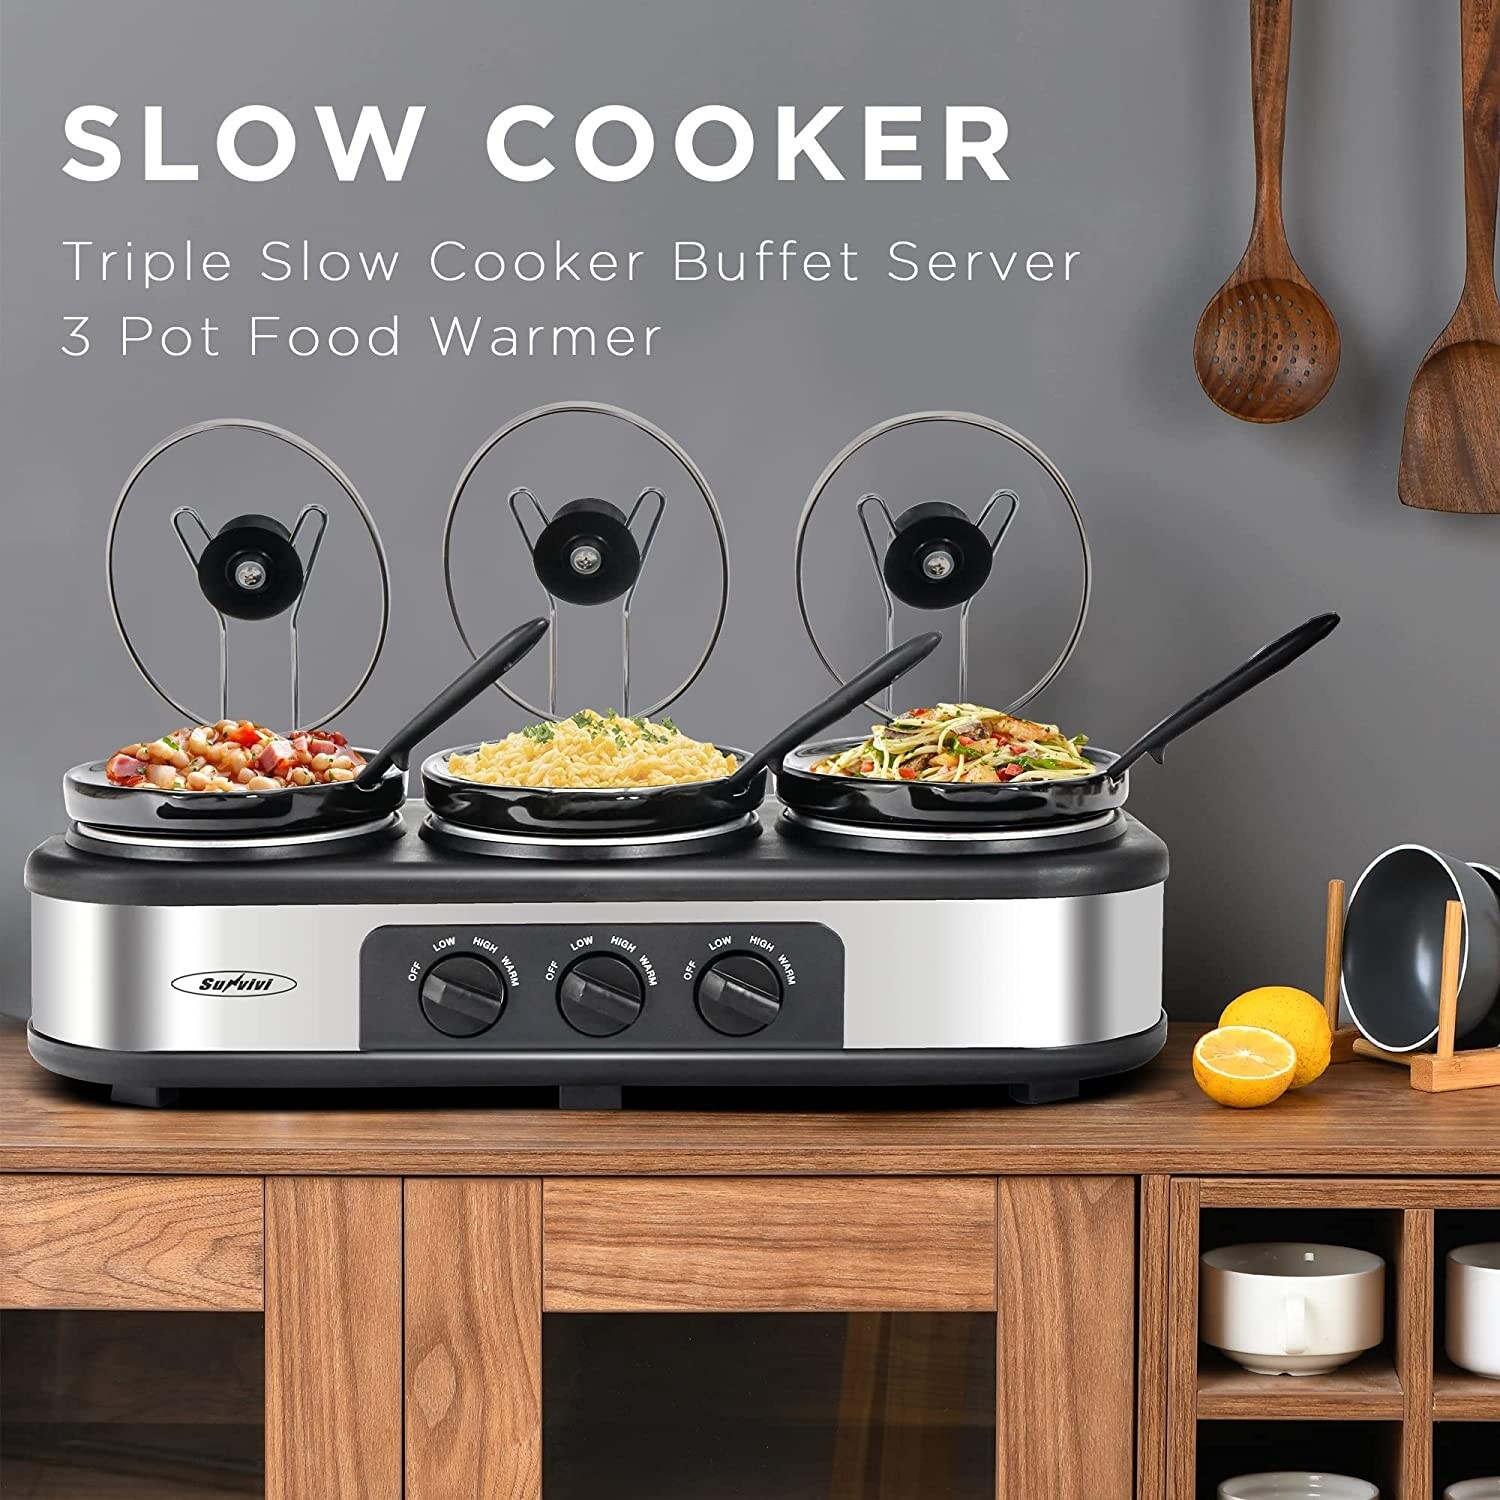 Gourmet Triple Slow Cooker, Triple Food Warmer, Buffet Server